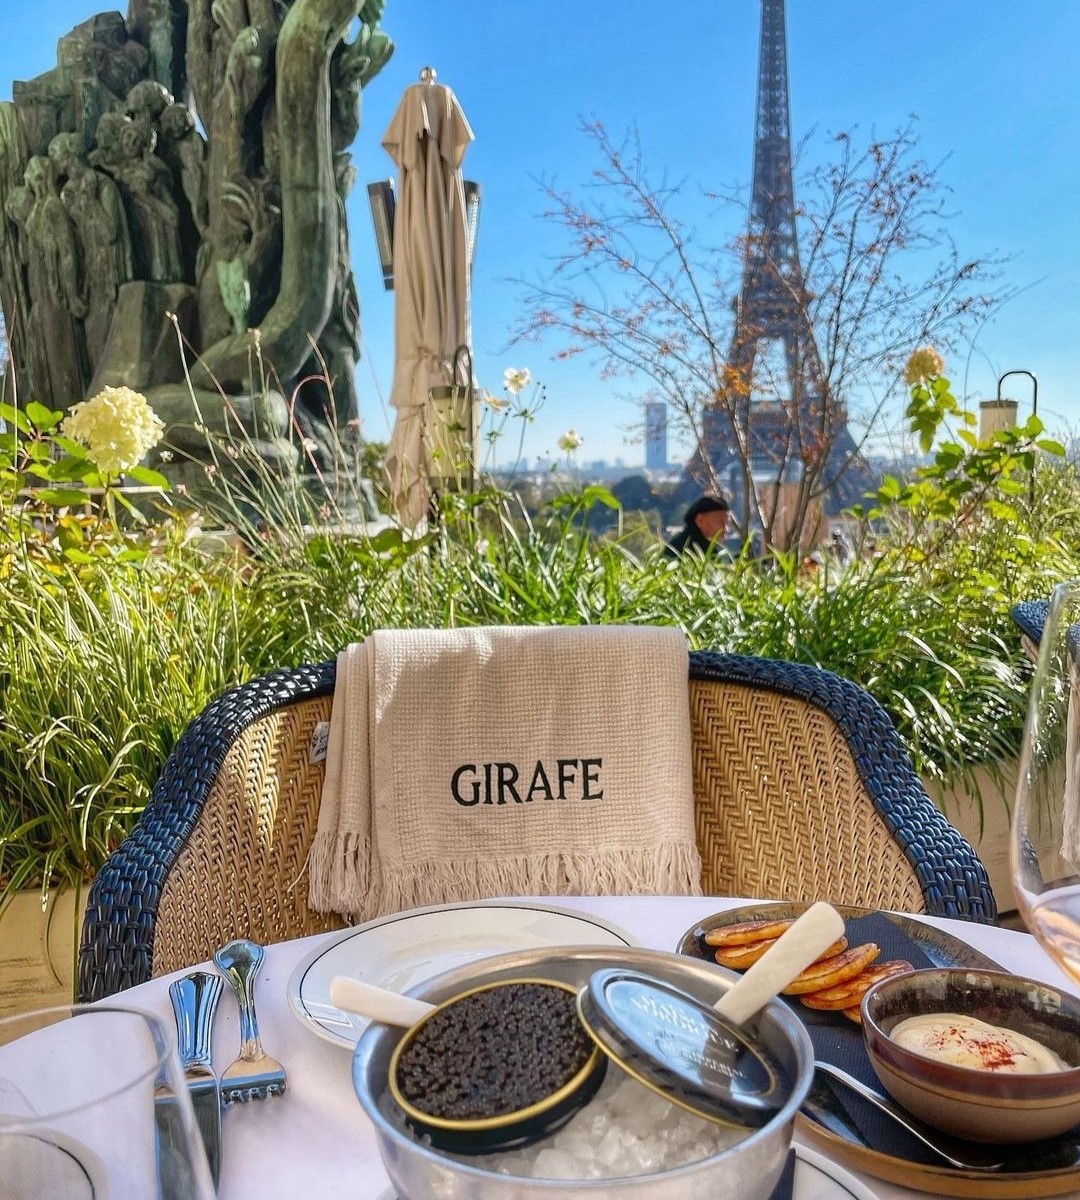 Girafe Paris Restaurant views with Eiffel Tower in the background